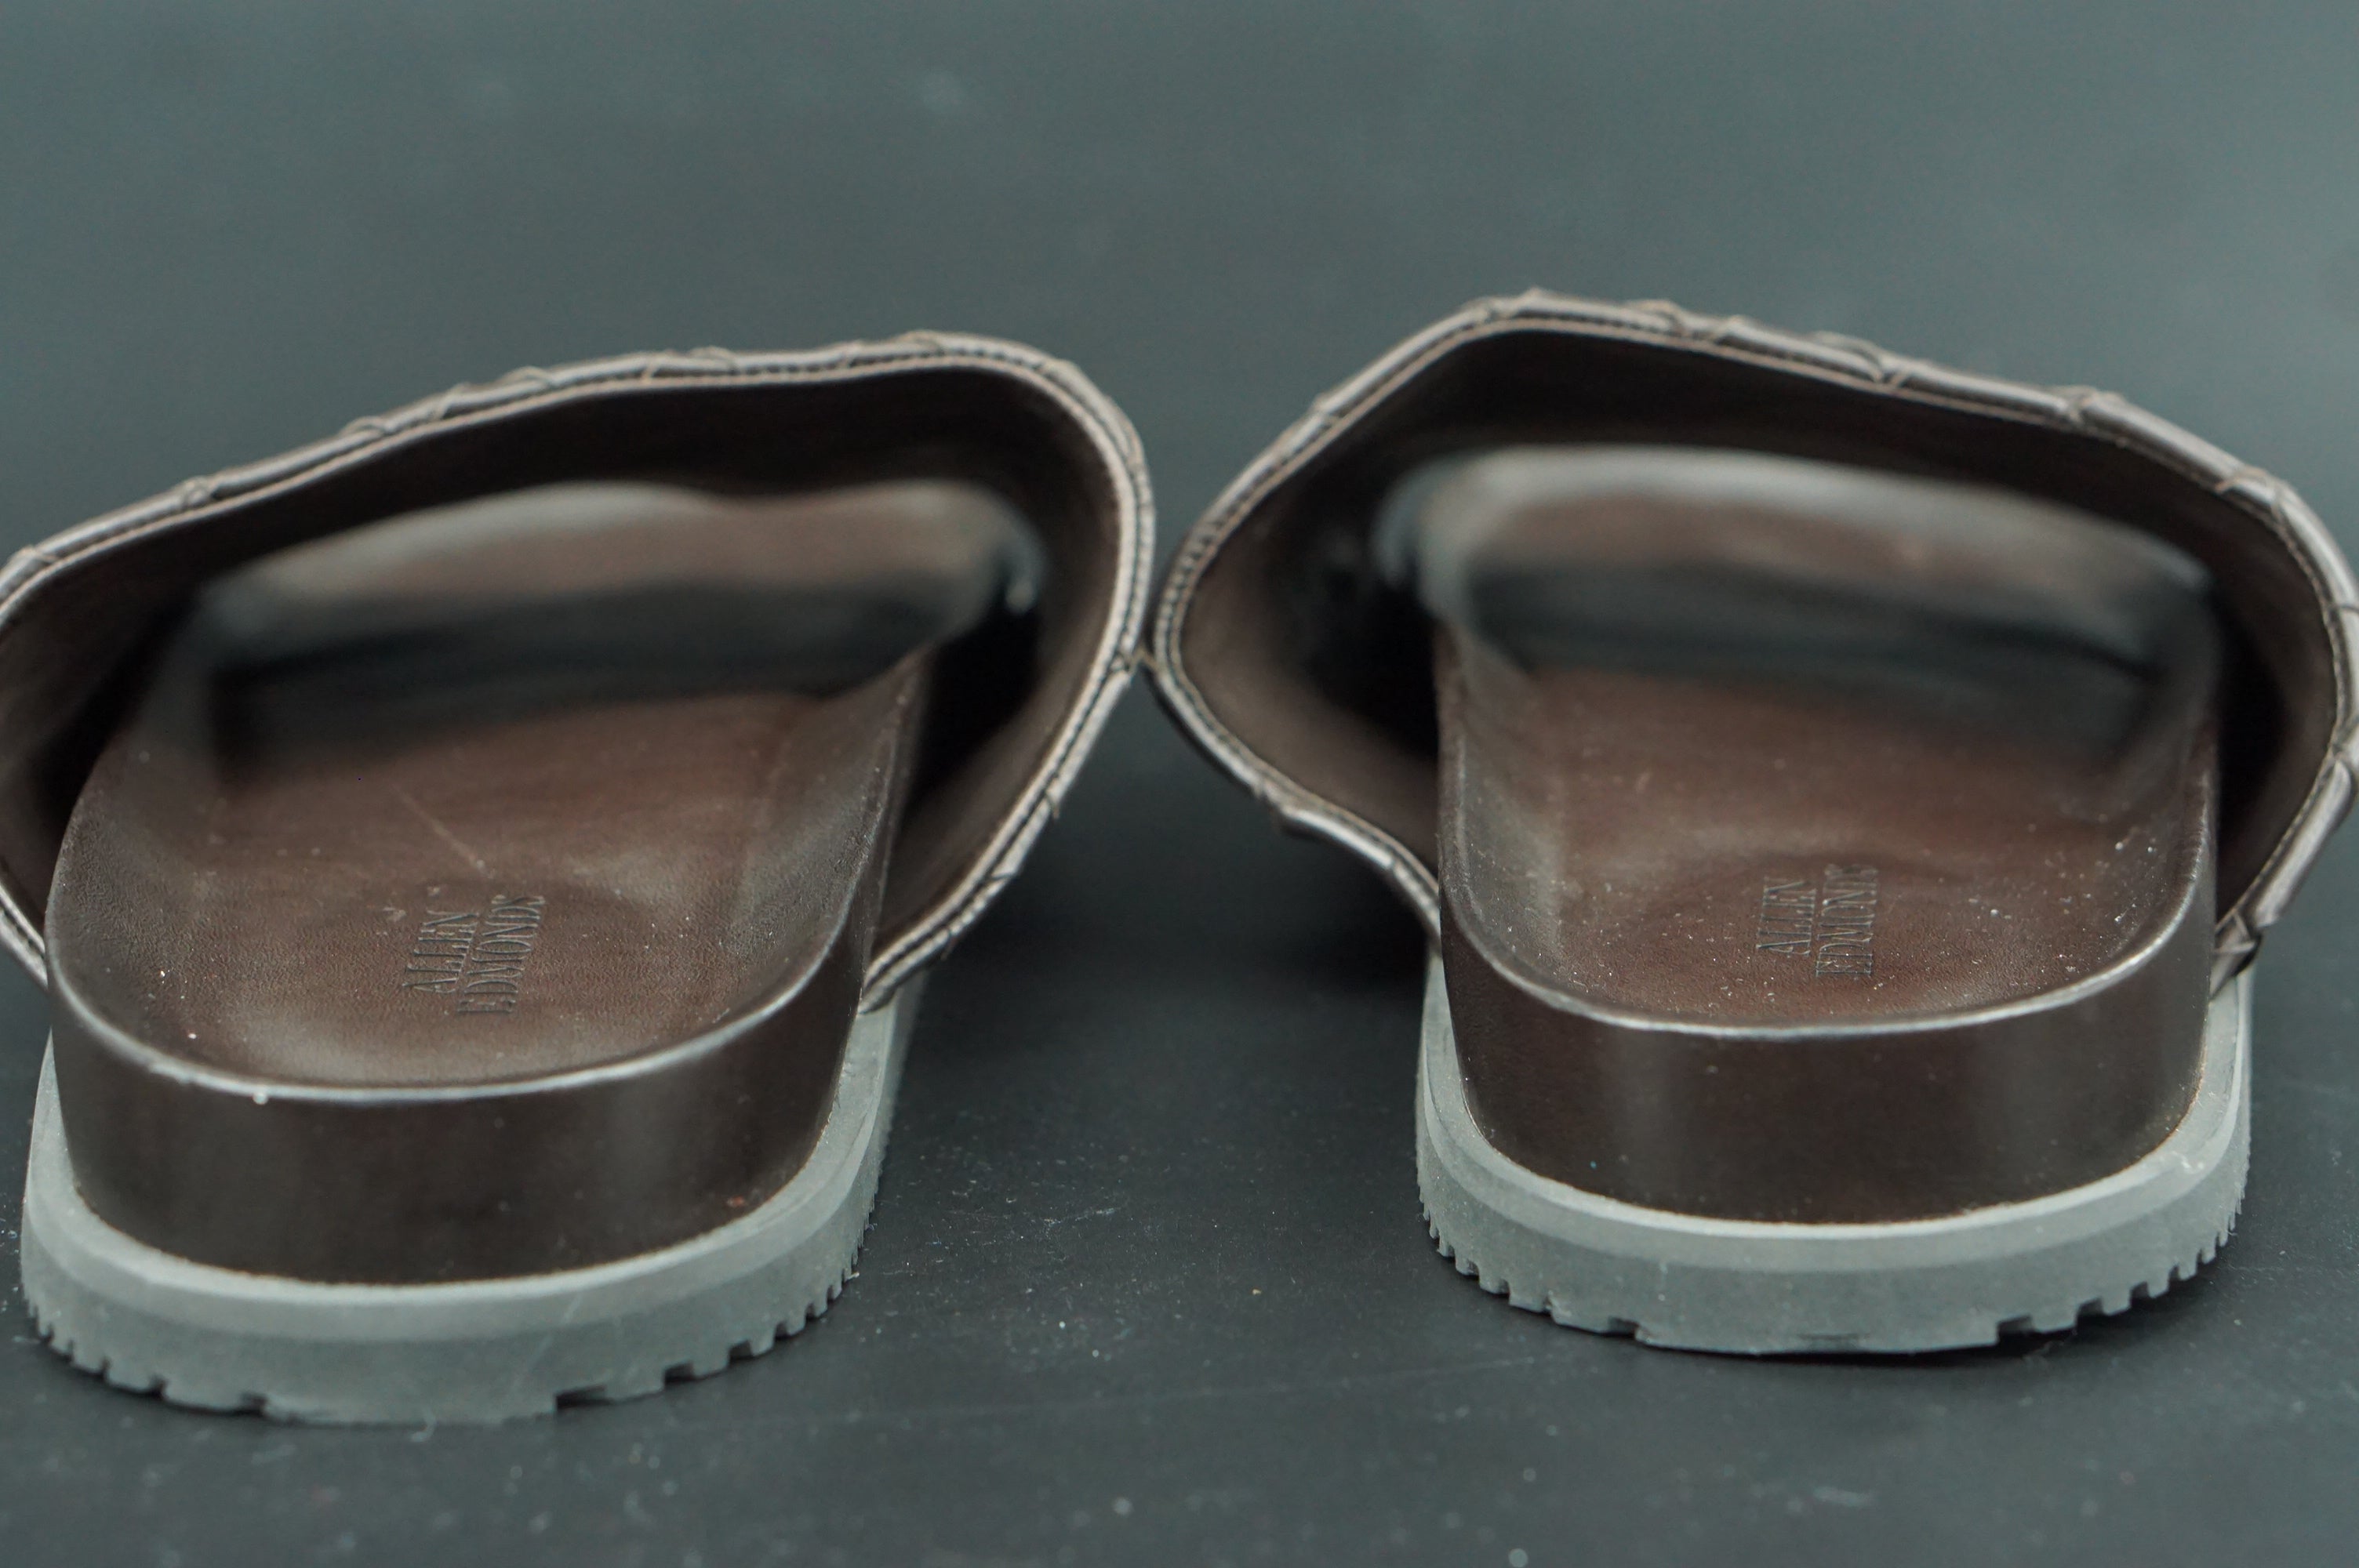 Allen Edmonds Del Mar Brown Woven Leather Men Slide Sandals Size 11.5 $225 Flat